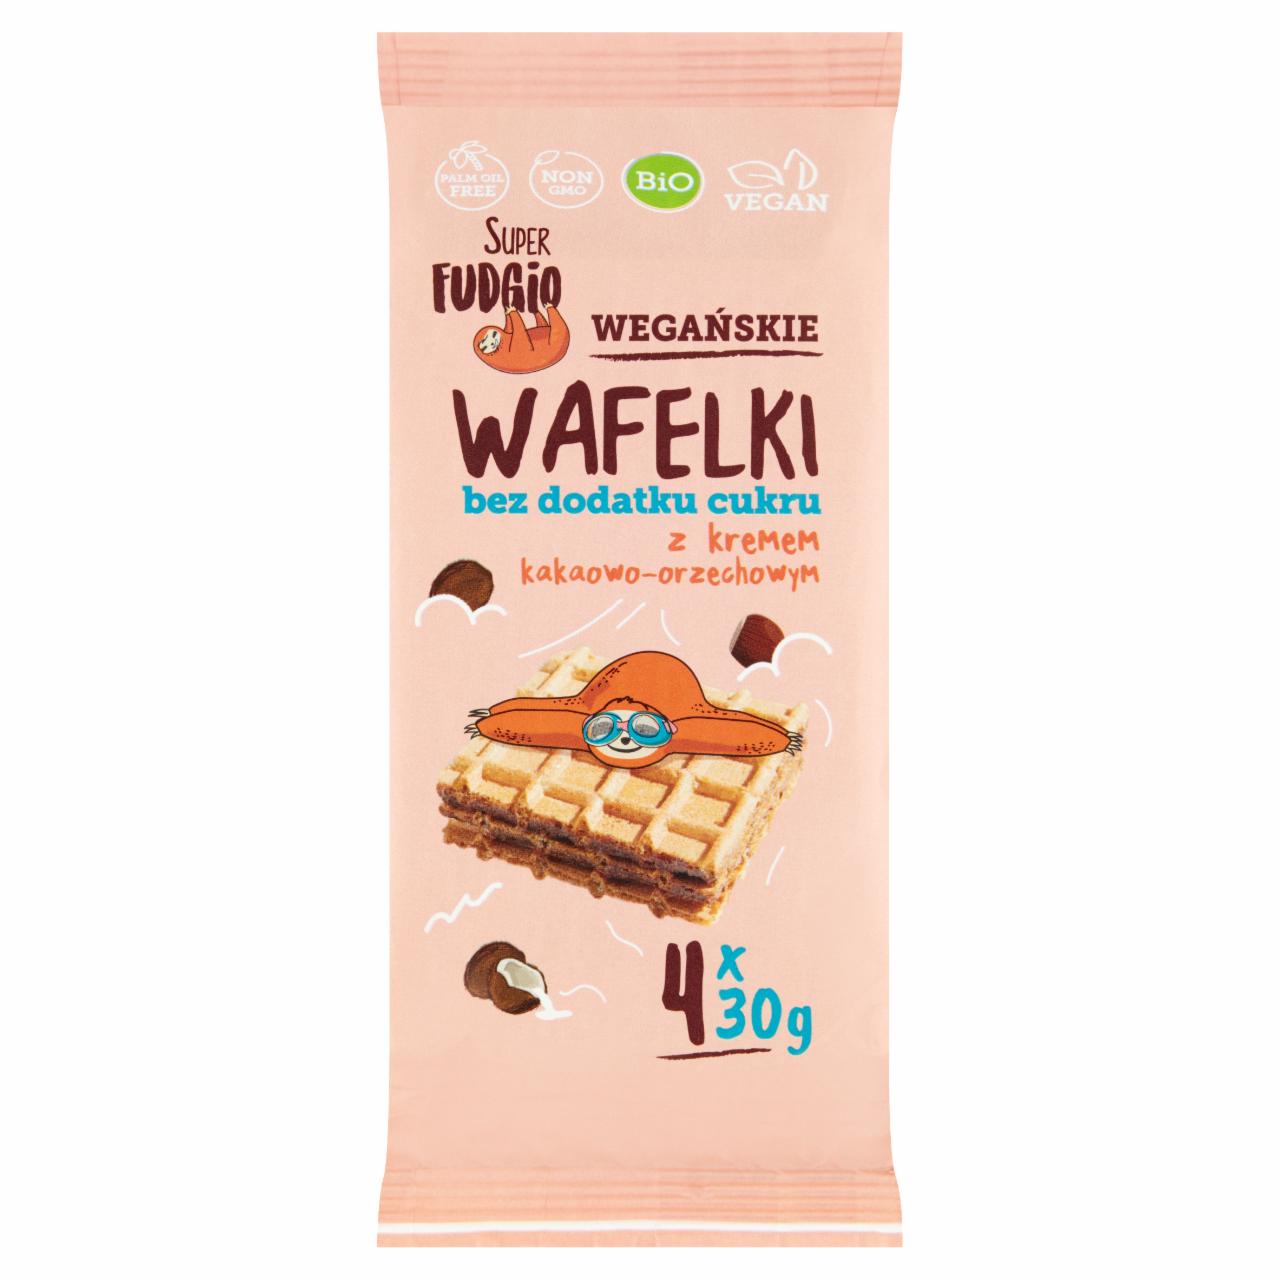 Zdjęcia - Super Fudgio Wegańskie wafelki bez dodatku cukru z kremem kakaowo-orzechowym 120 g (4 x 30 g)